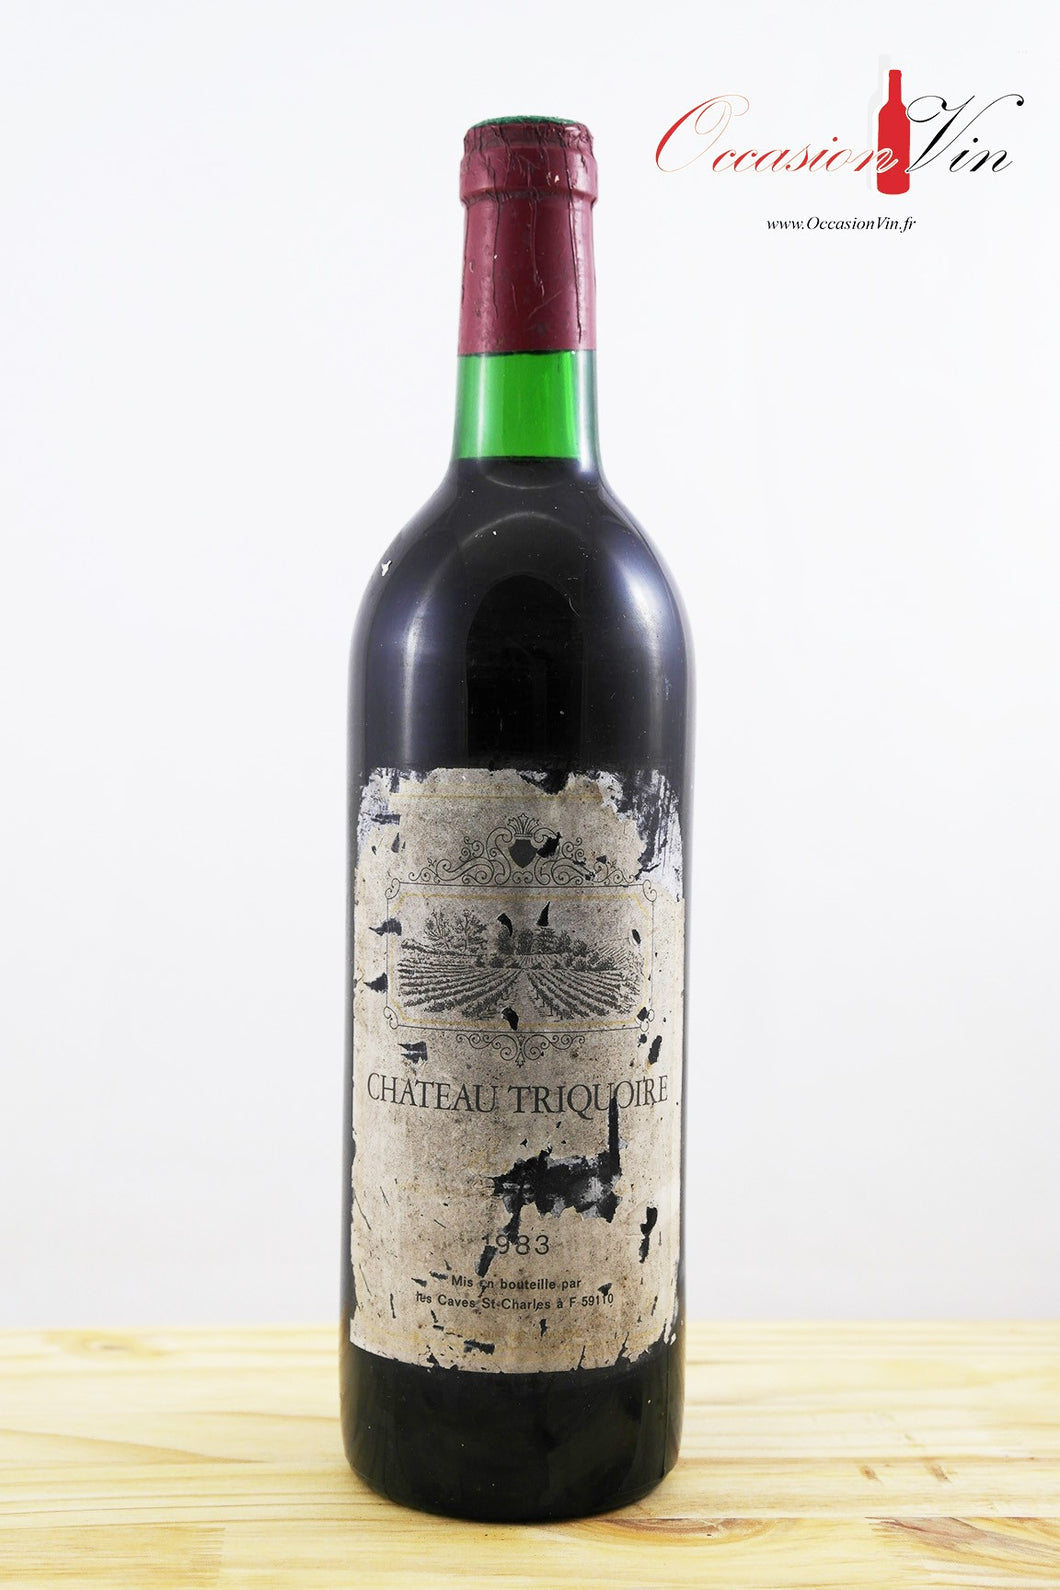 Château Triquoire ELA Vin 1983